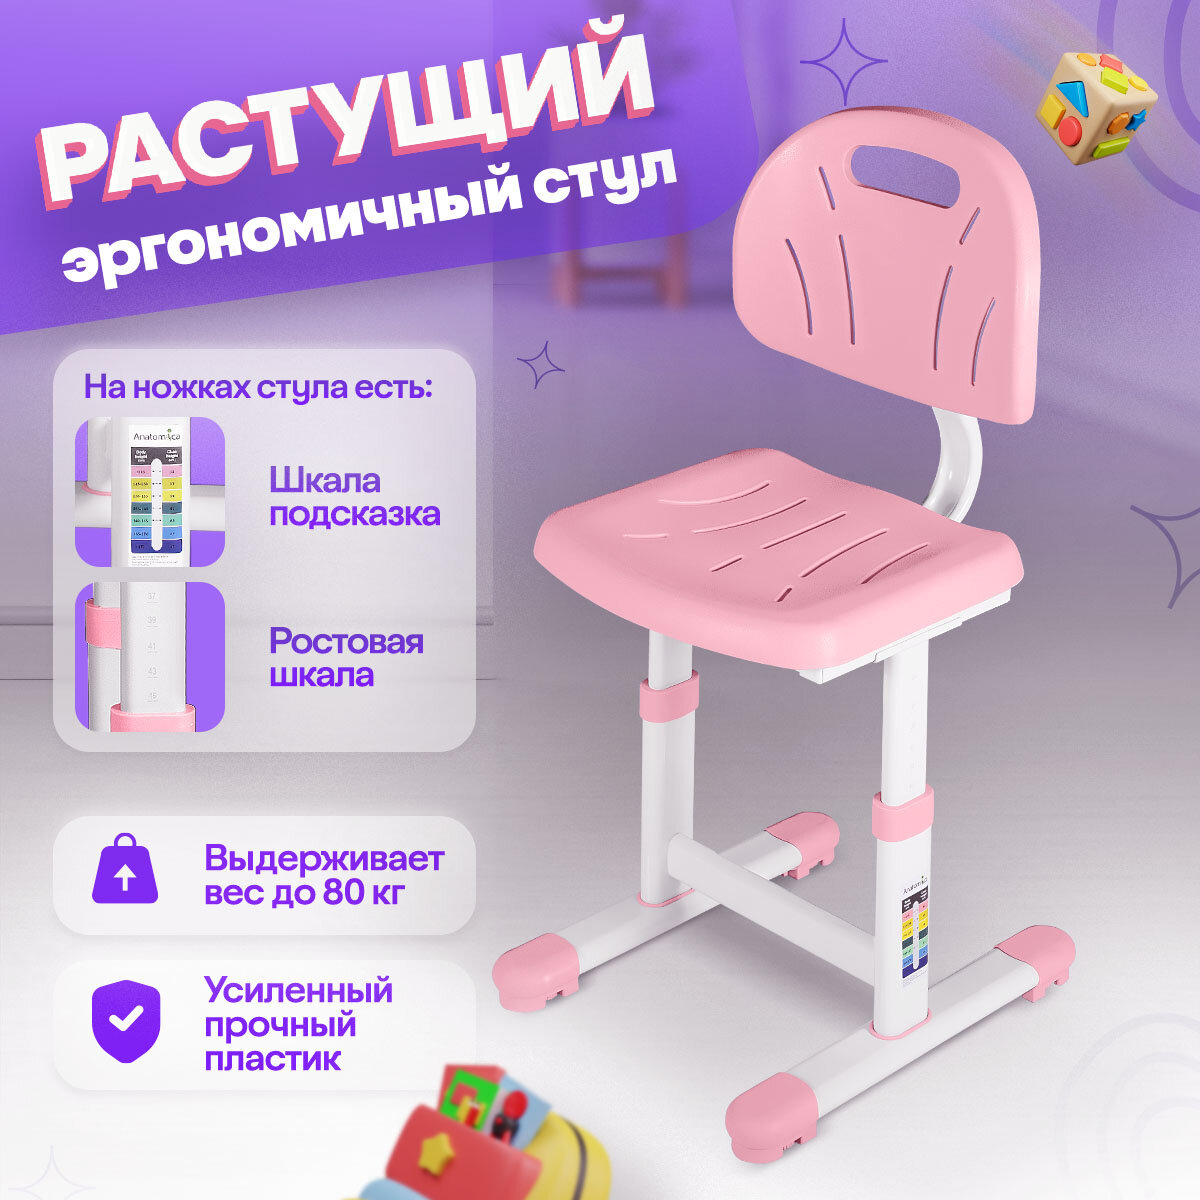 Комплект Anatomica Karina парта + стул + выдвижной ящик белый/светло-розовый